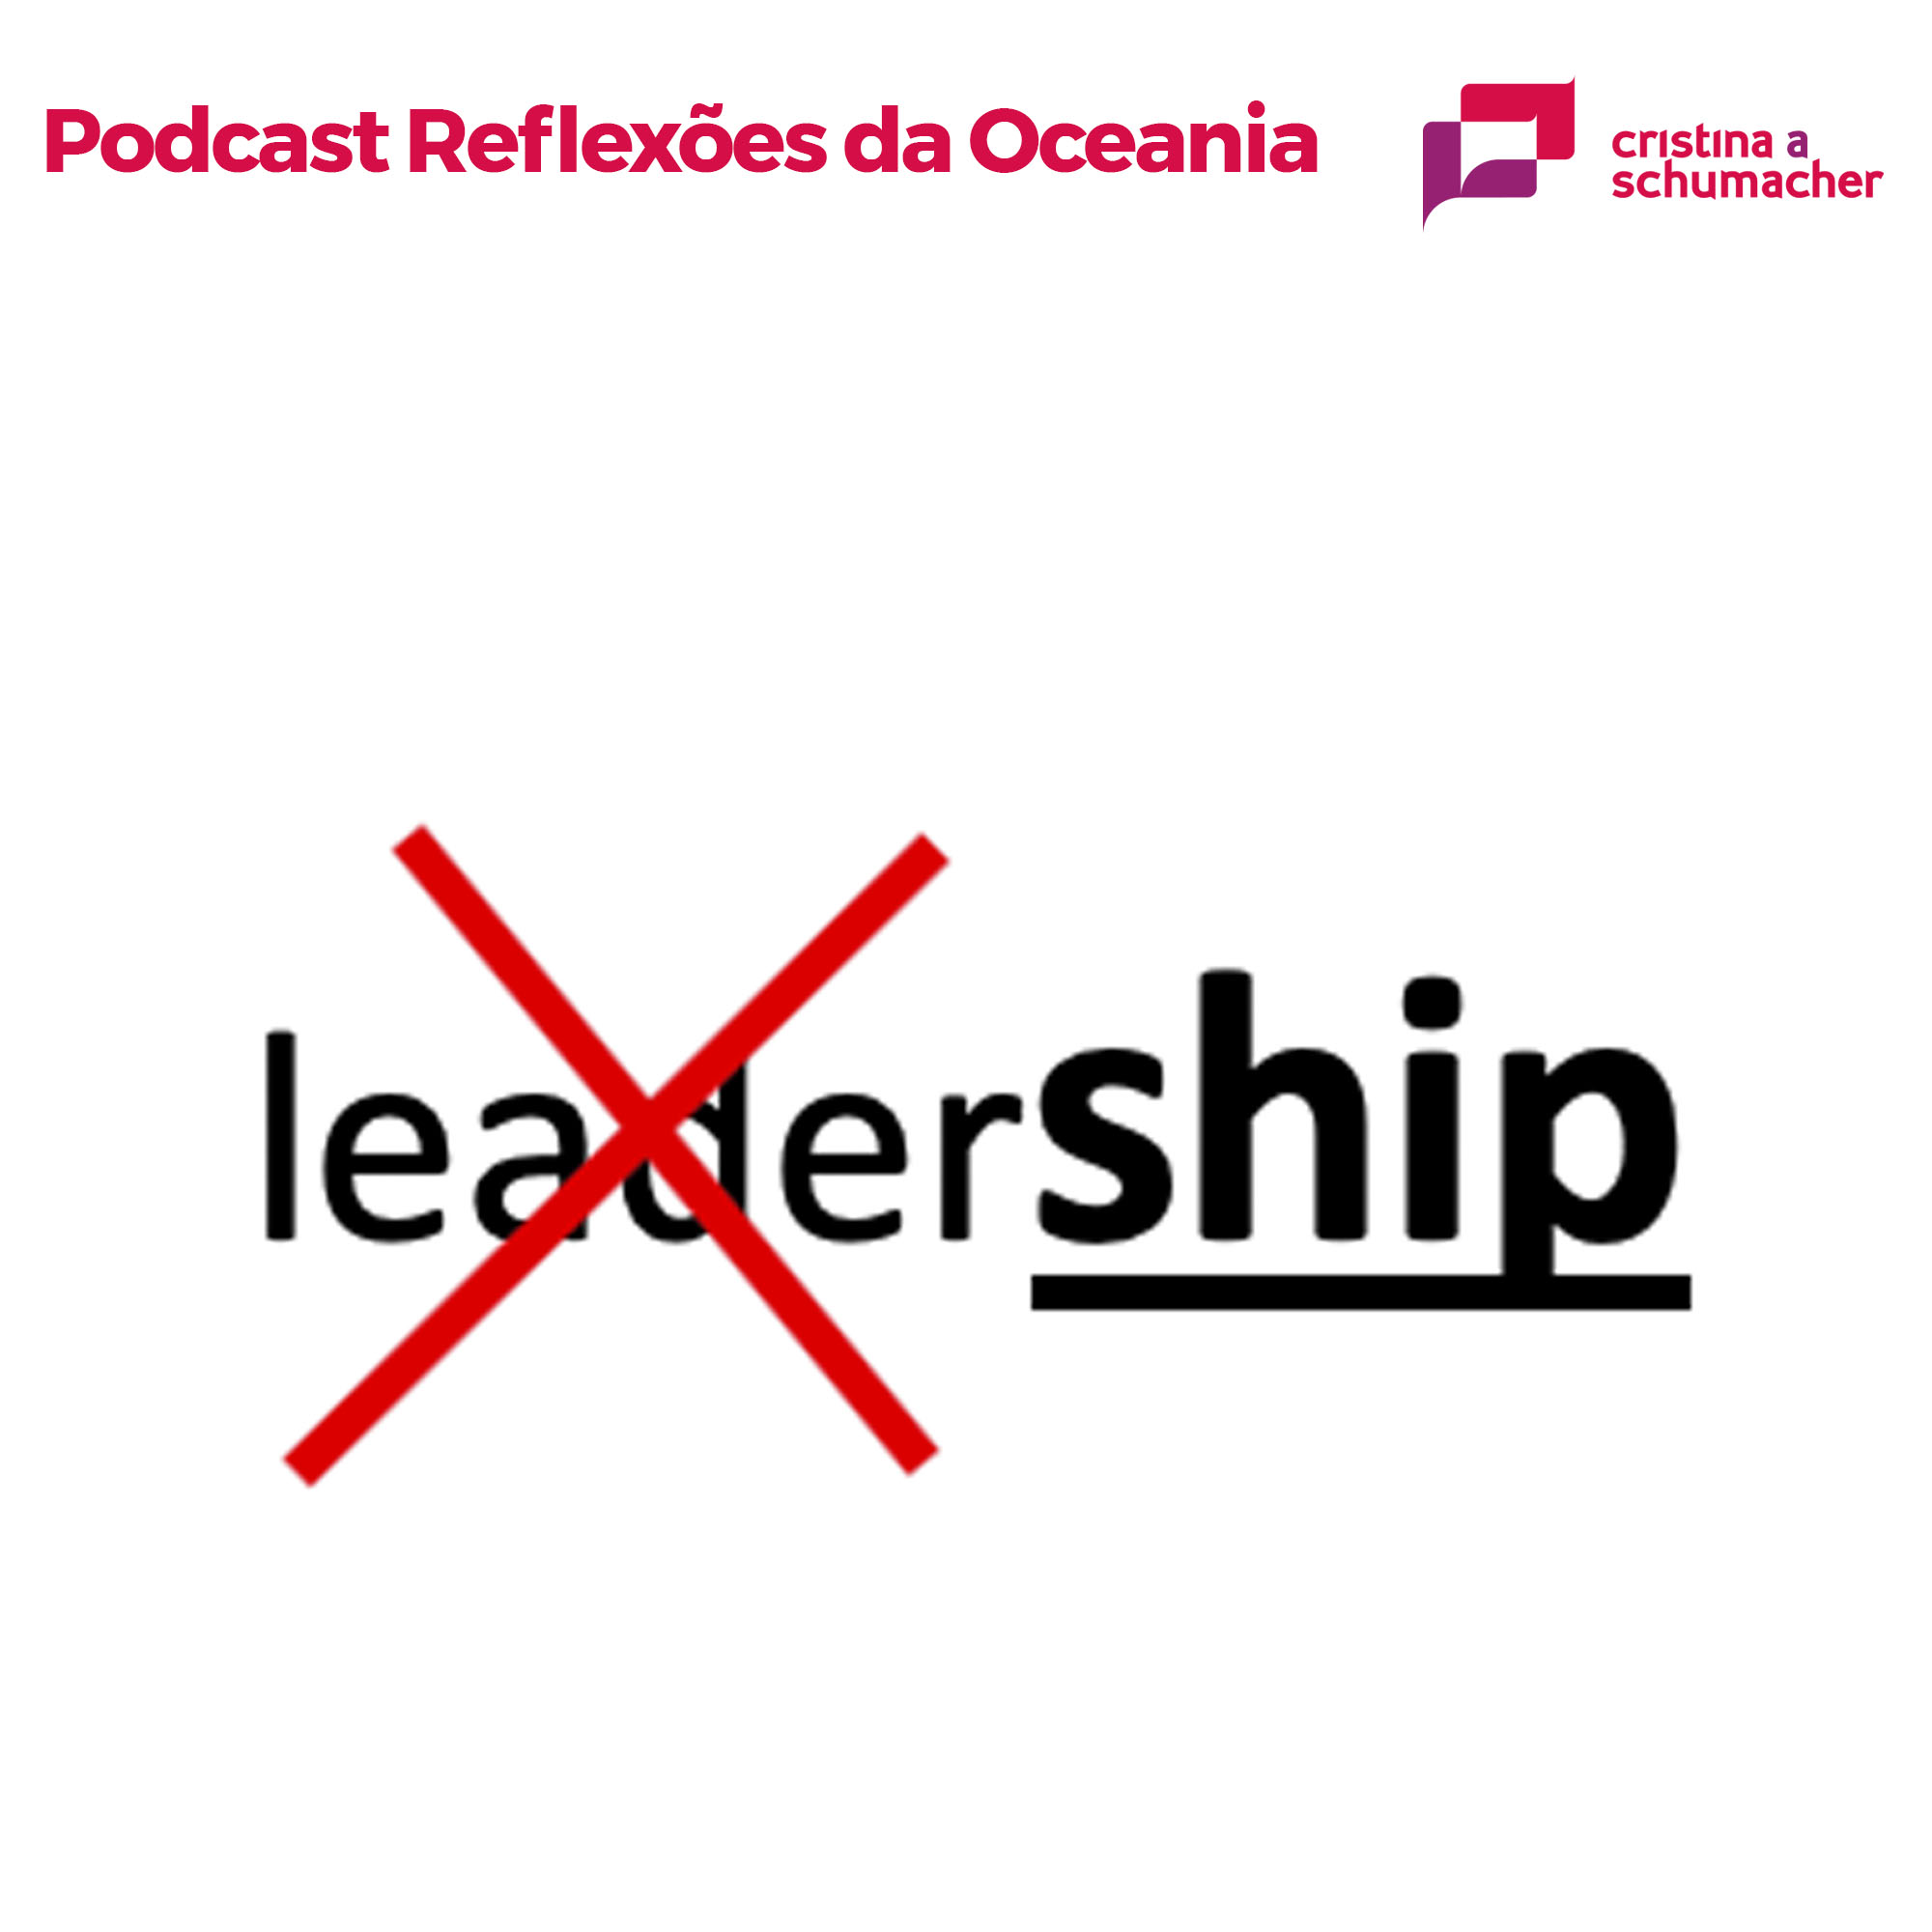 Podcast: Reflexões da Oceania – Leadership